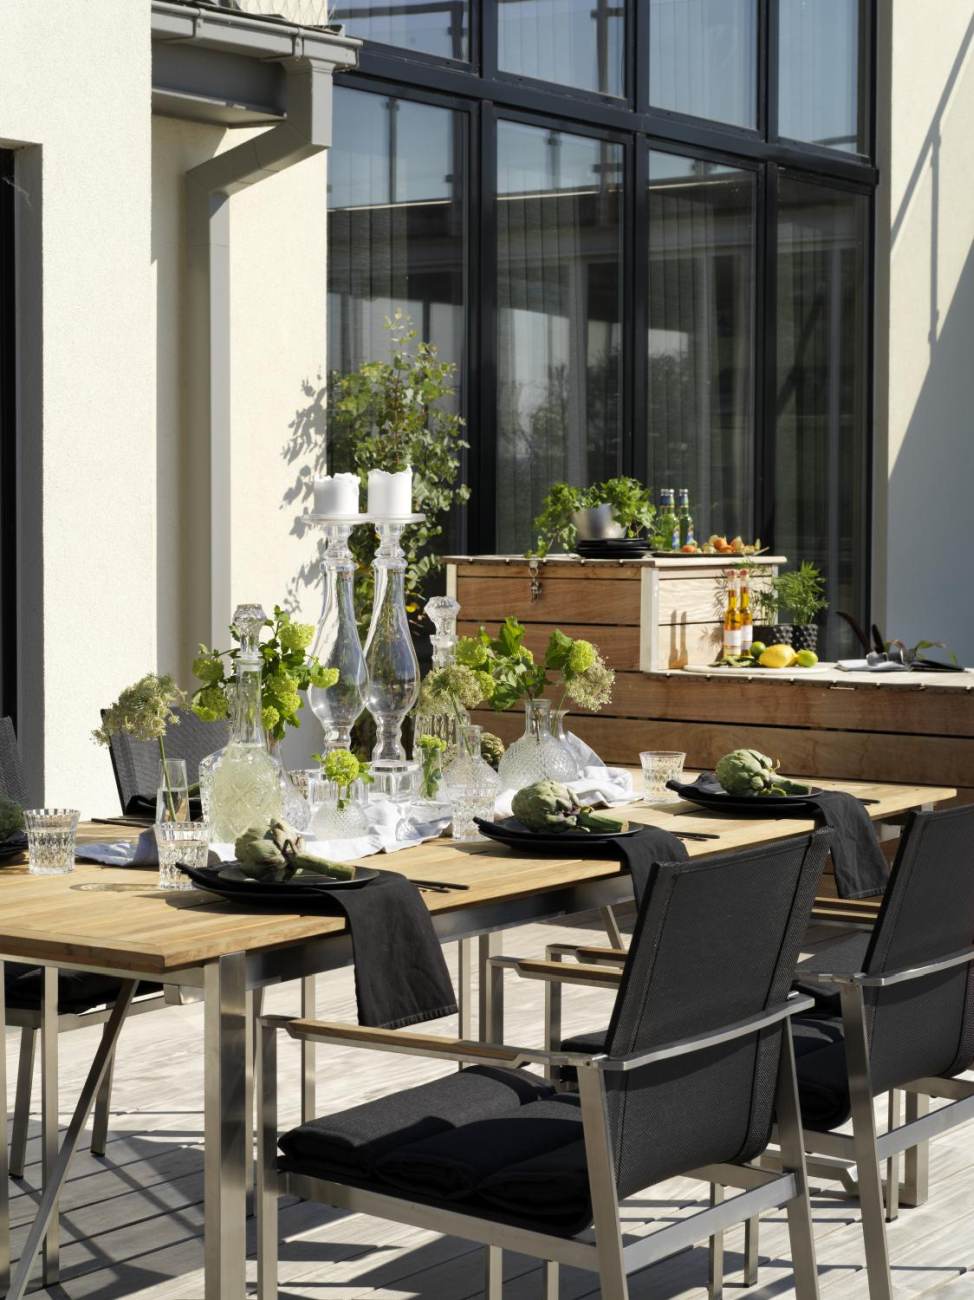 Der Gartenesstisch Gotland überzeugt mit seinem modernen Design. Gefertigt wurde die Tischplatte aus Akazienhholz und besitzt einen natürlichen Farbton. Das Gestell ist auch aus Metall und hat eine silberne Farbe. Der Tisch besitzt eine Länger von 220 cm.